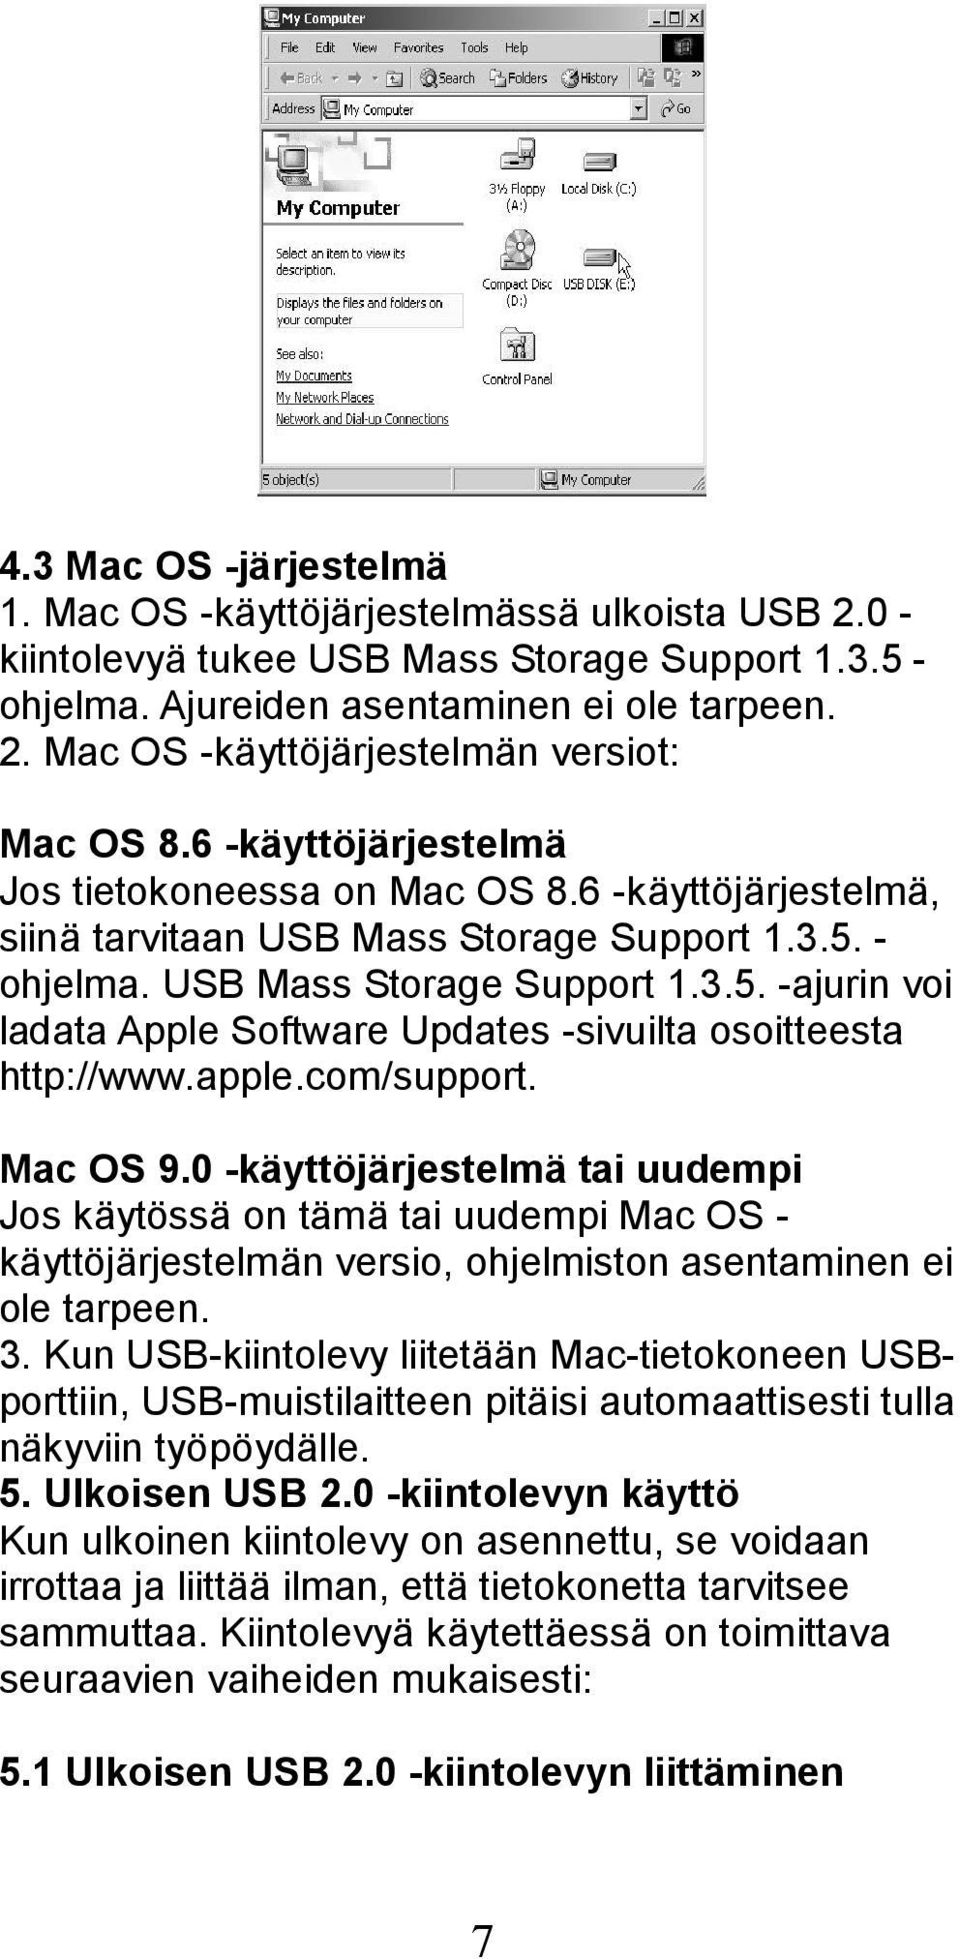 apple.com/support. Mac OS 9.0 -käyttöjärjestelmä tai uudempi Jos käytössä on tämä tai uudempi Mac OS - käyttöjärjestelmän versio, ohjelmiston asentaminen ei ole tarpeen. 3.